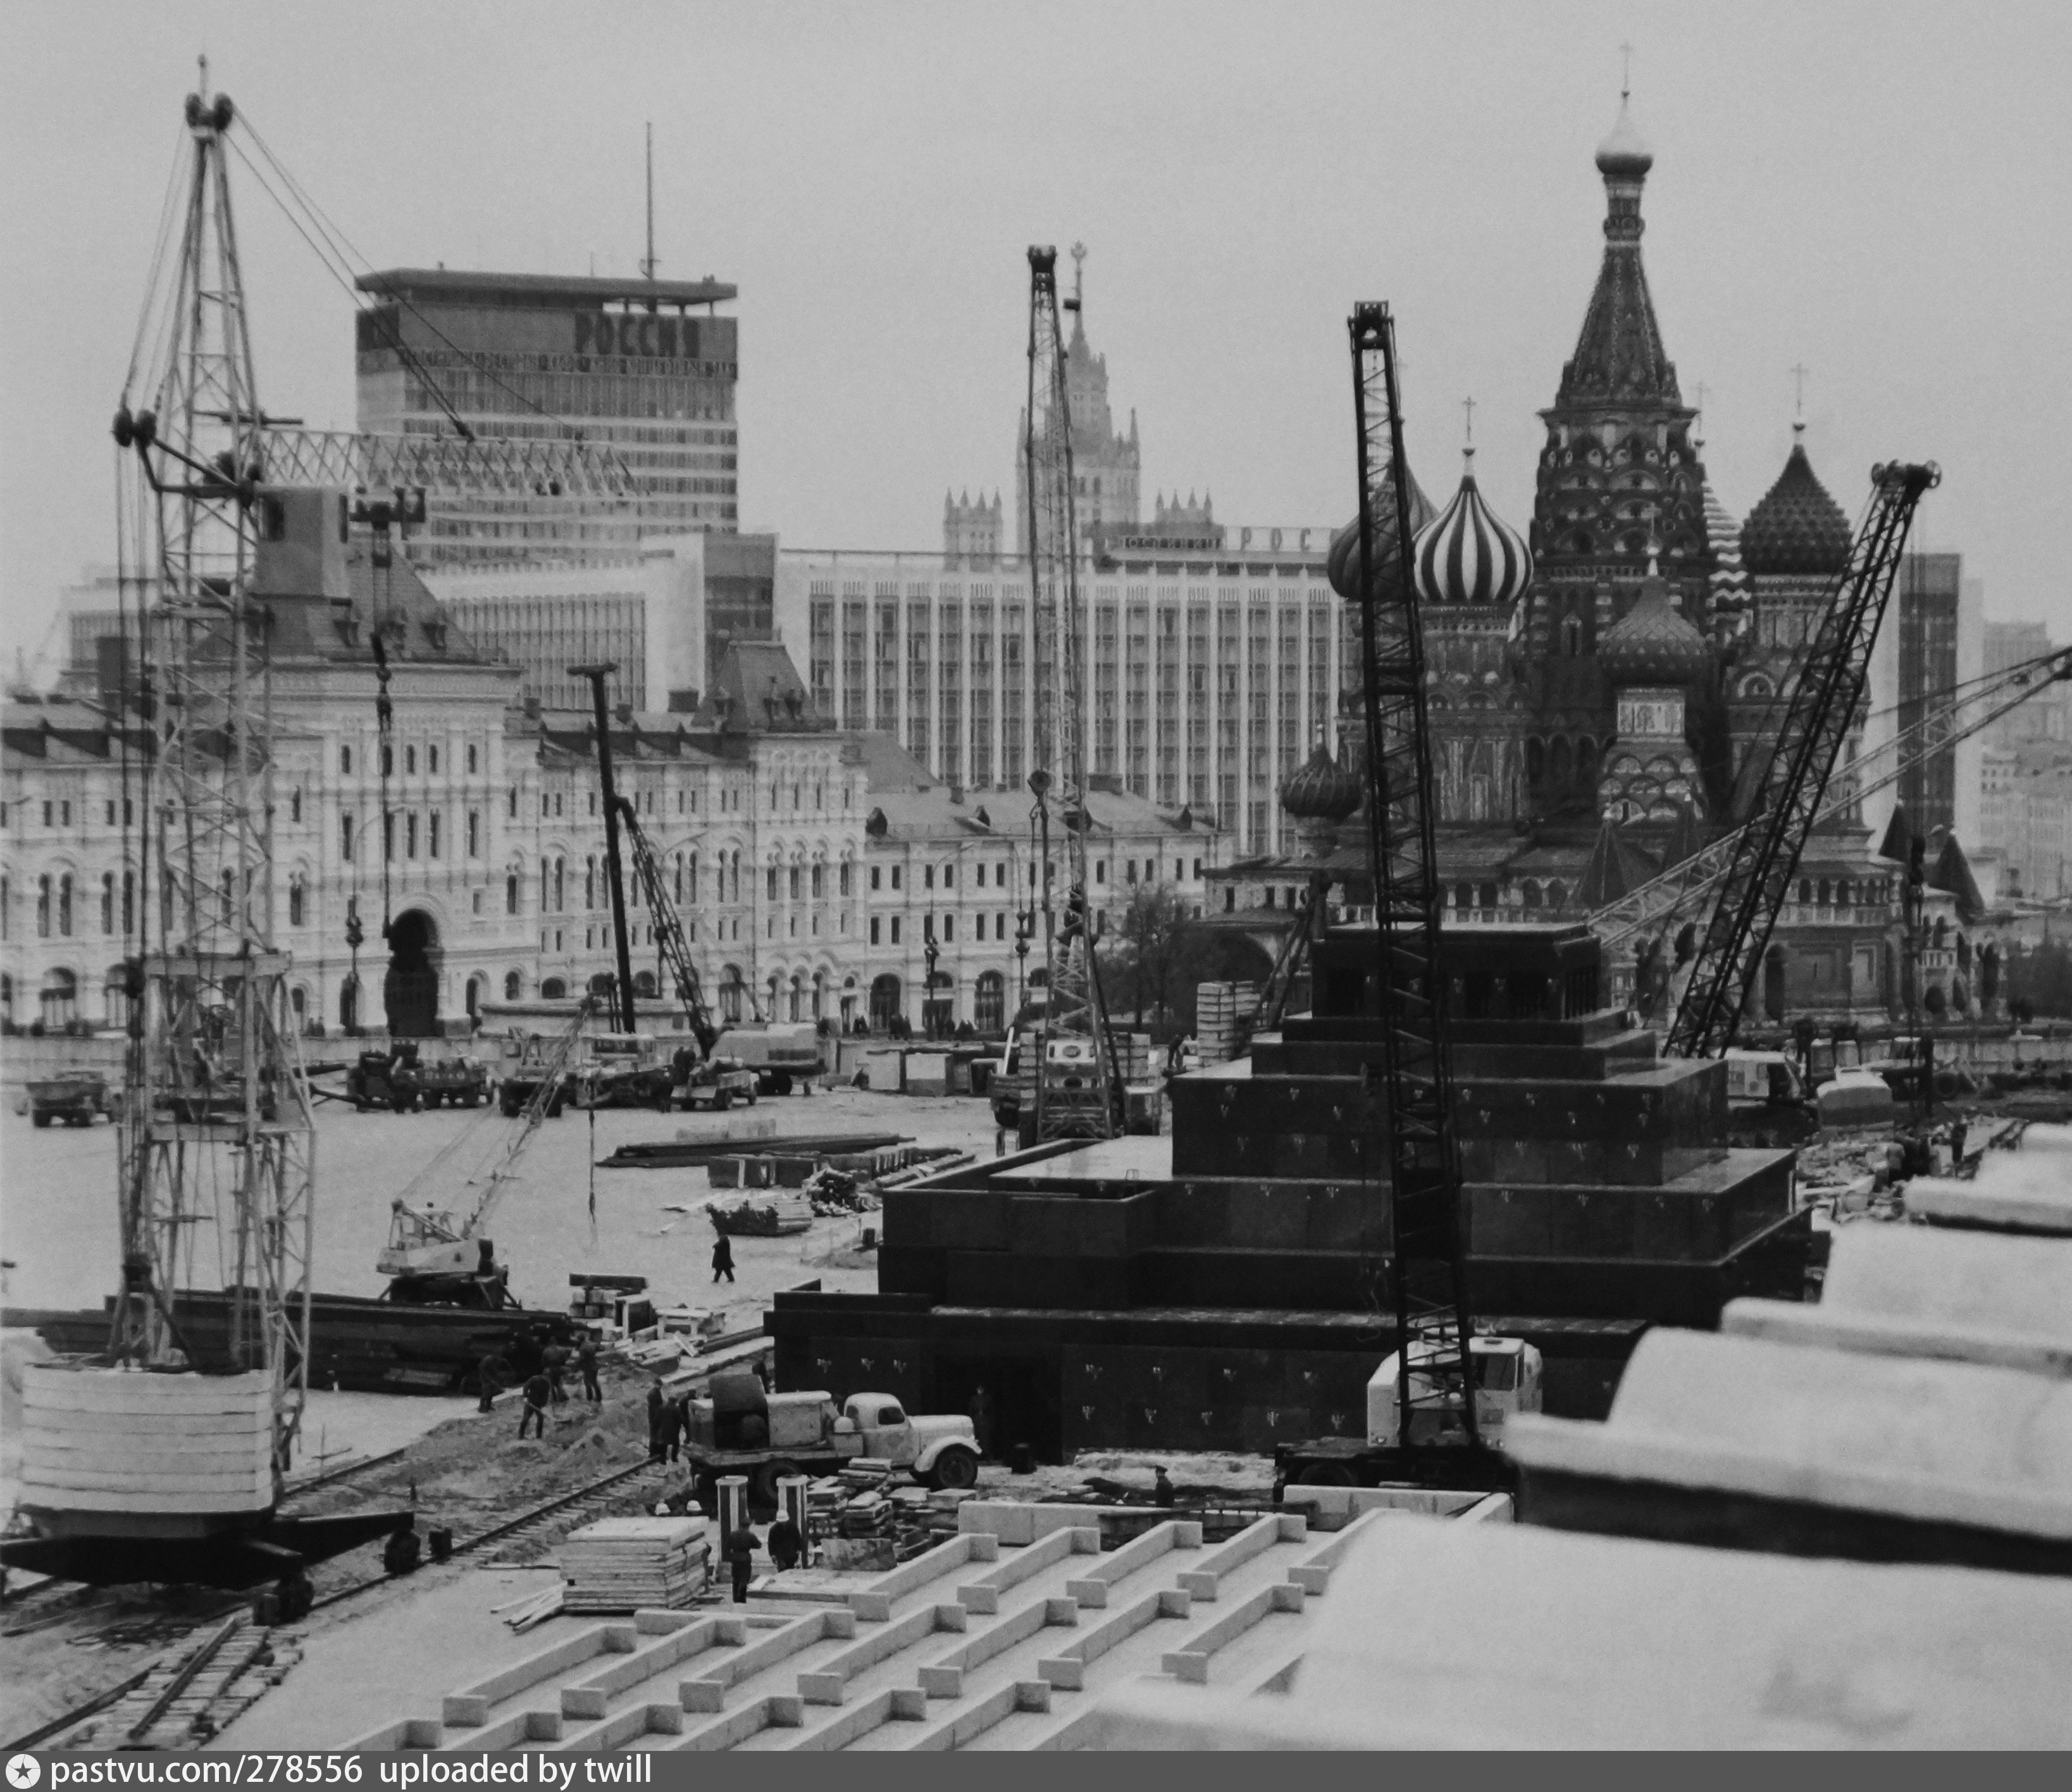 Как строили кремль в москве фото